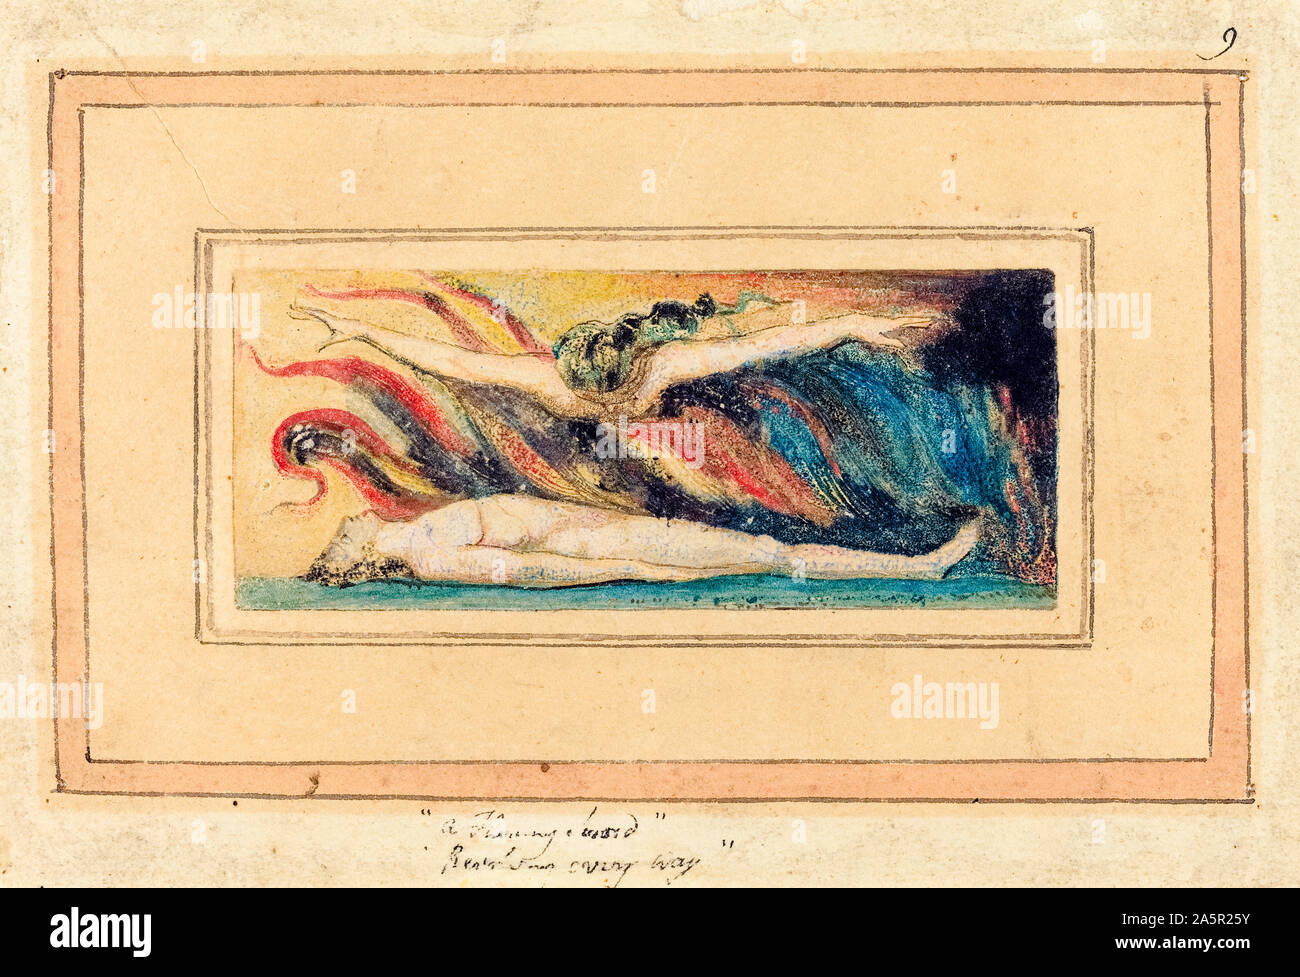 William Blake, l'âme survolant le corps, illustration, 1796 Banque D'Images